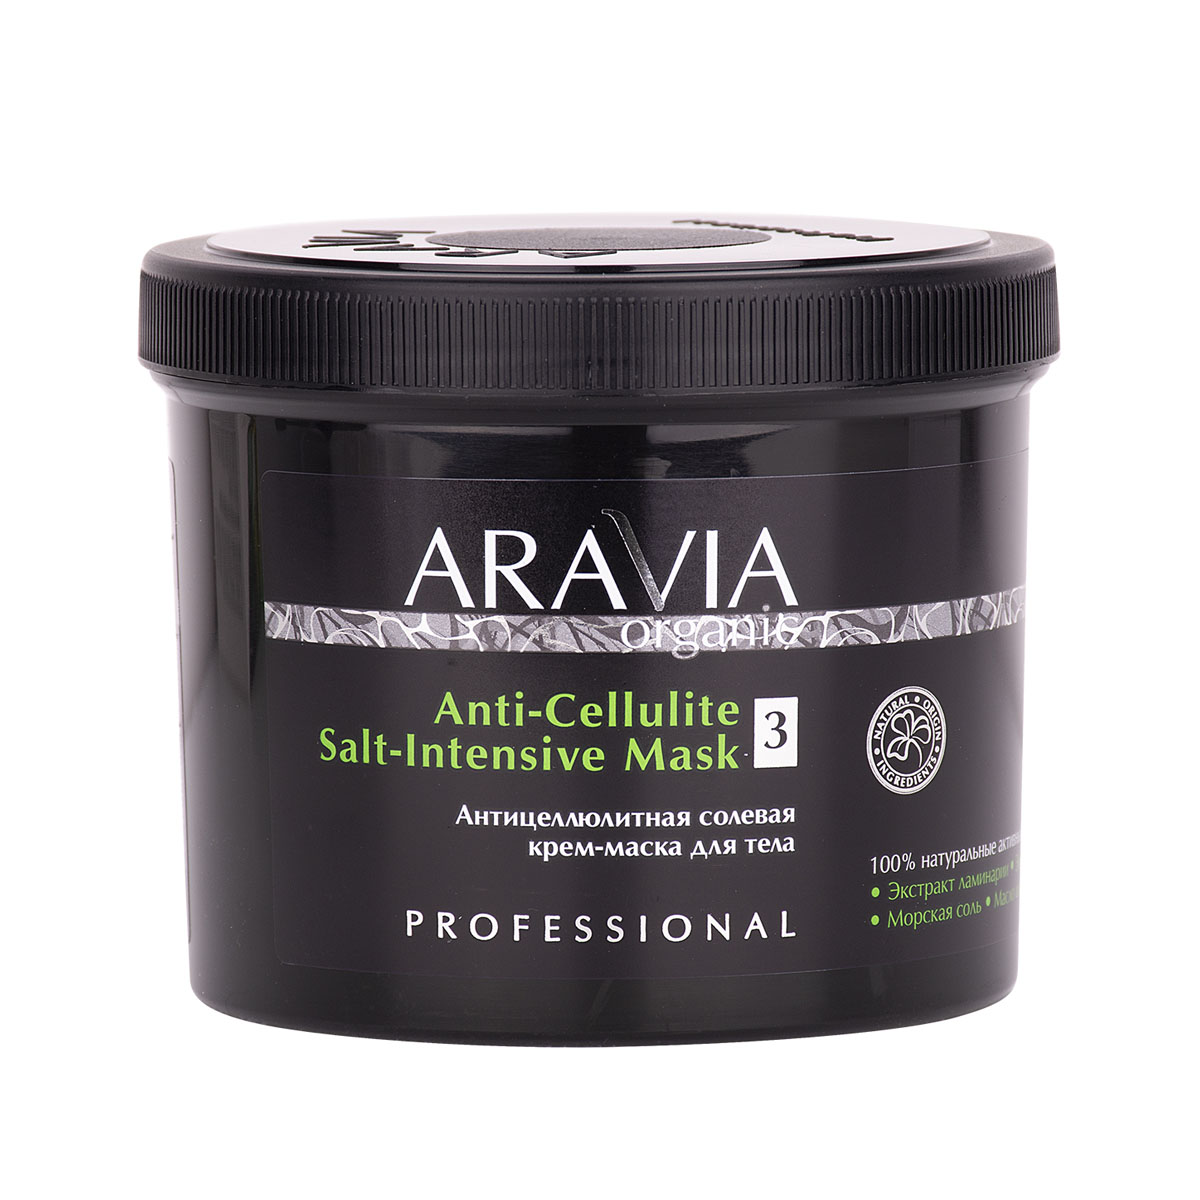 Aravia Professional Антицеллюлитная солевая крем-маска для т